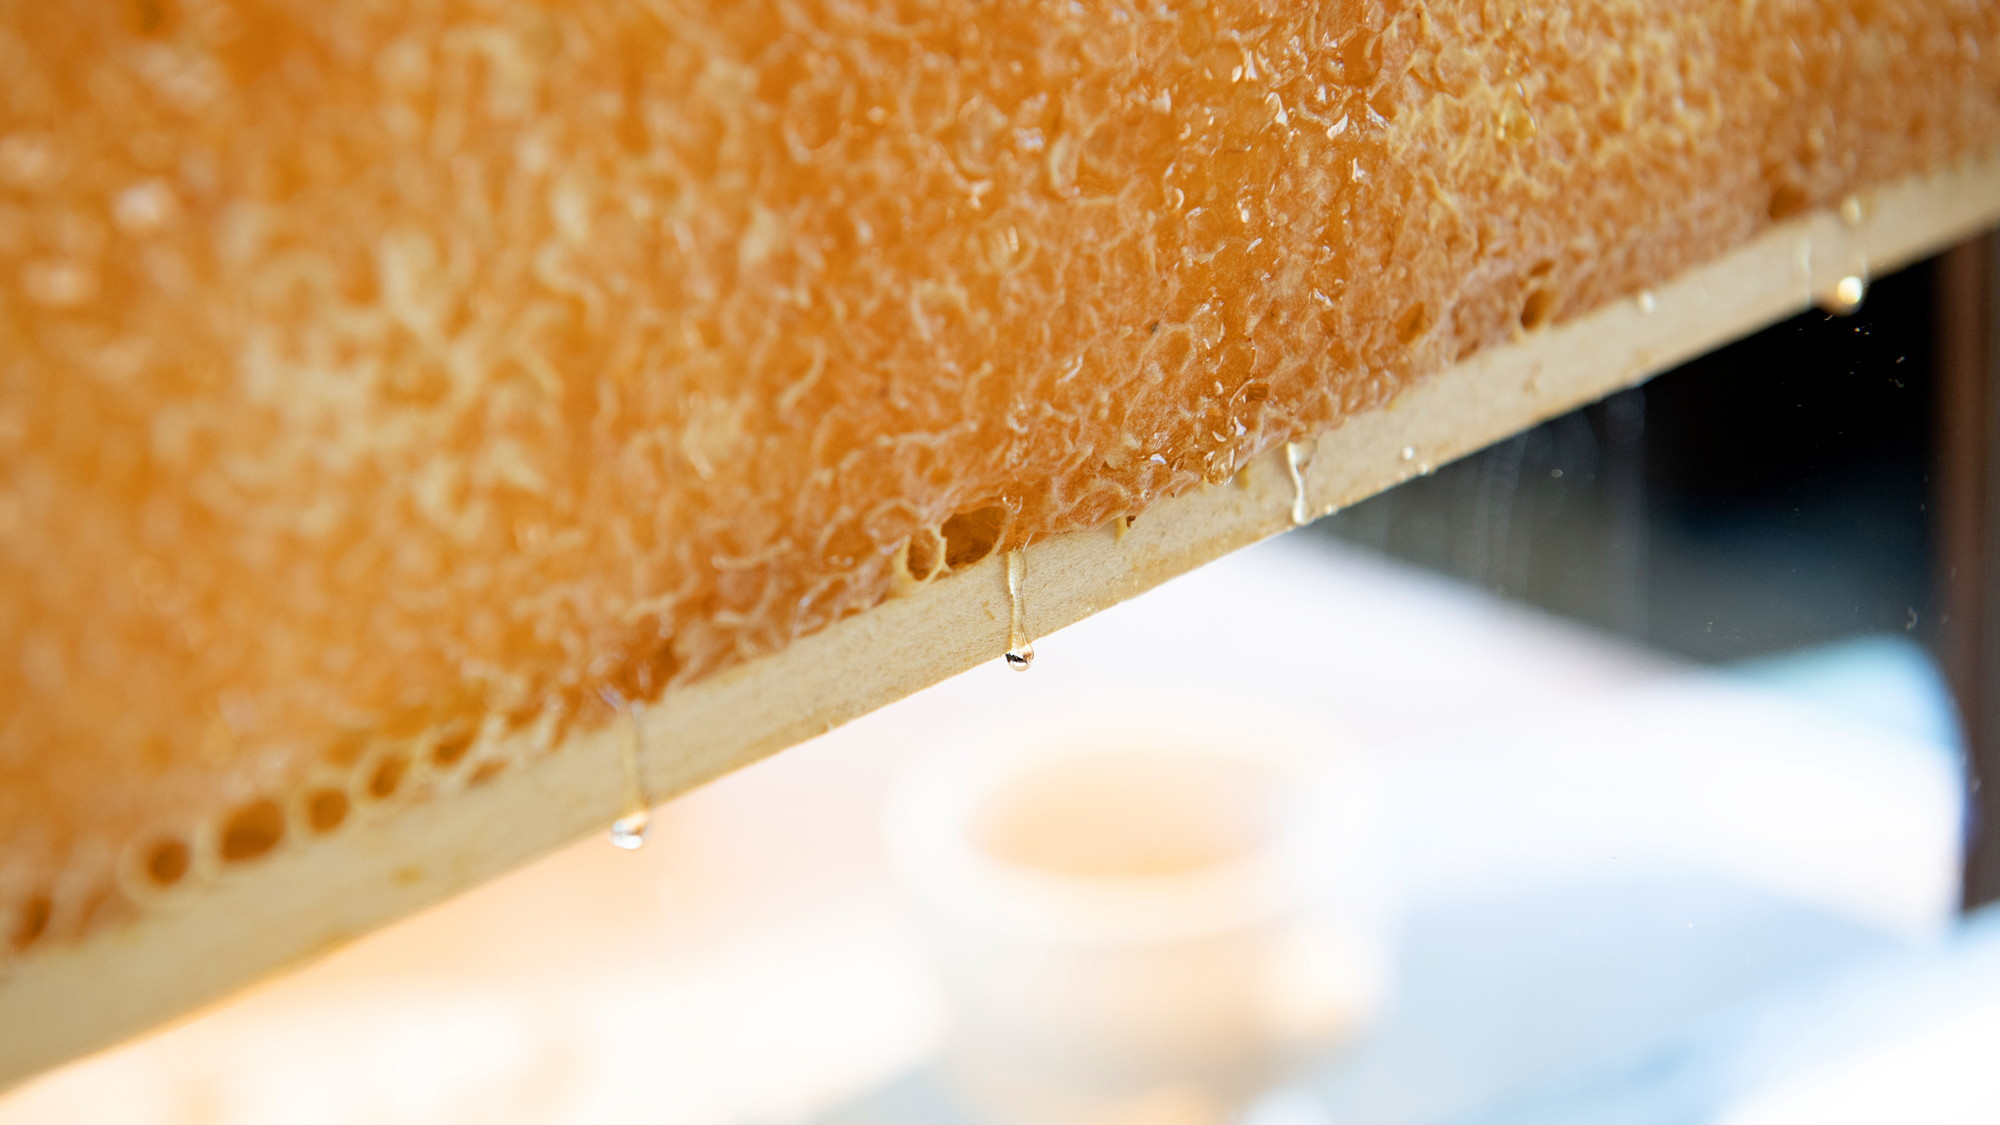 【世界の朝食】インパクト大な巣蜜のハチミツやジャムなどお好みのフレーバーを付けてお召し上がりください